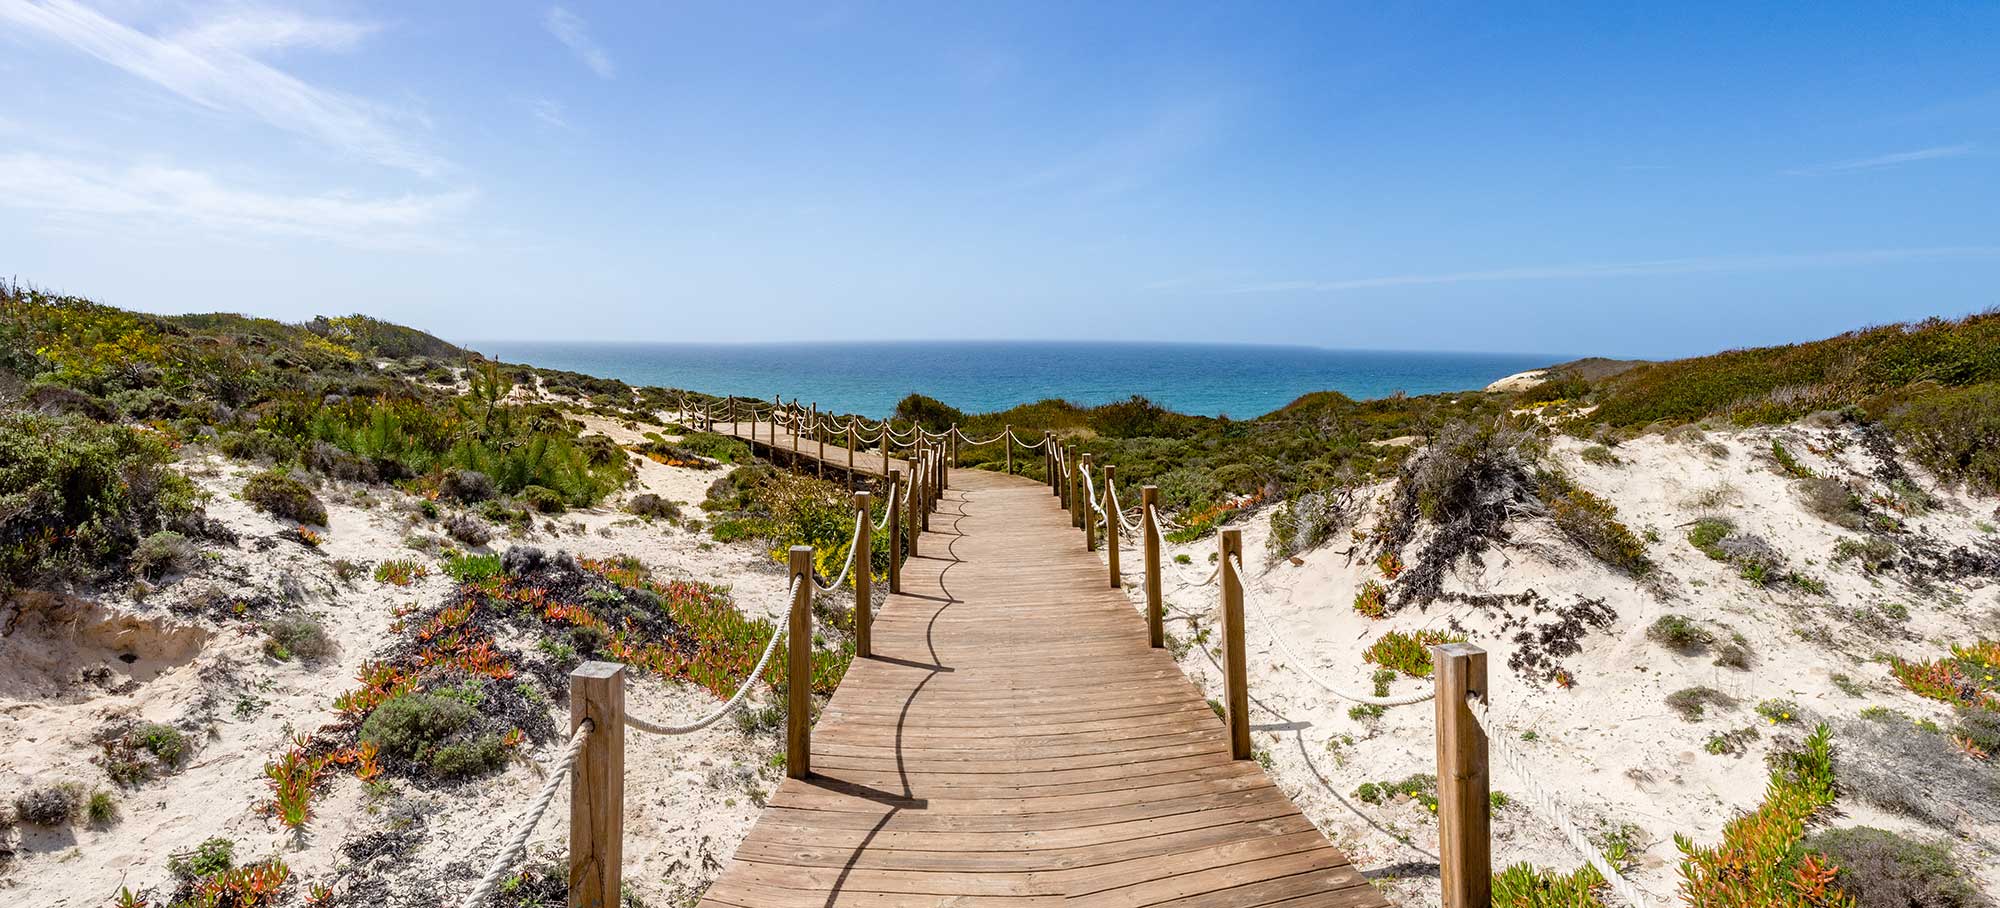 Boardwalk leading to beach, Zambujeira do Mar, Odemira, Alentejo, Vicentine coast of Portugal